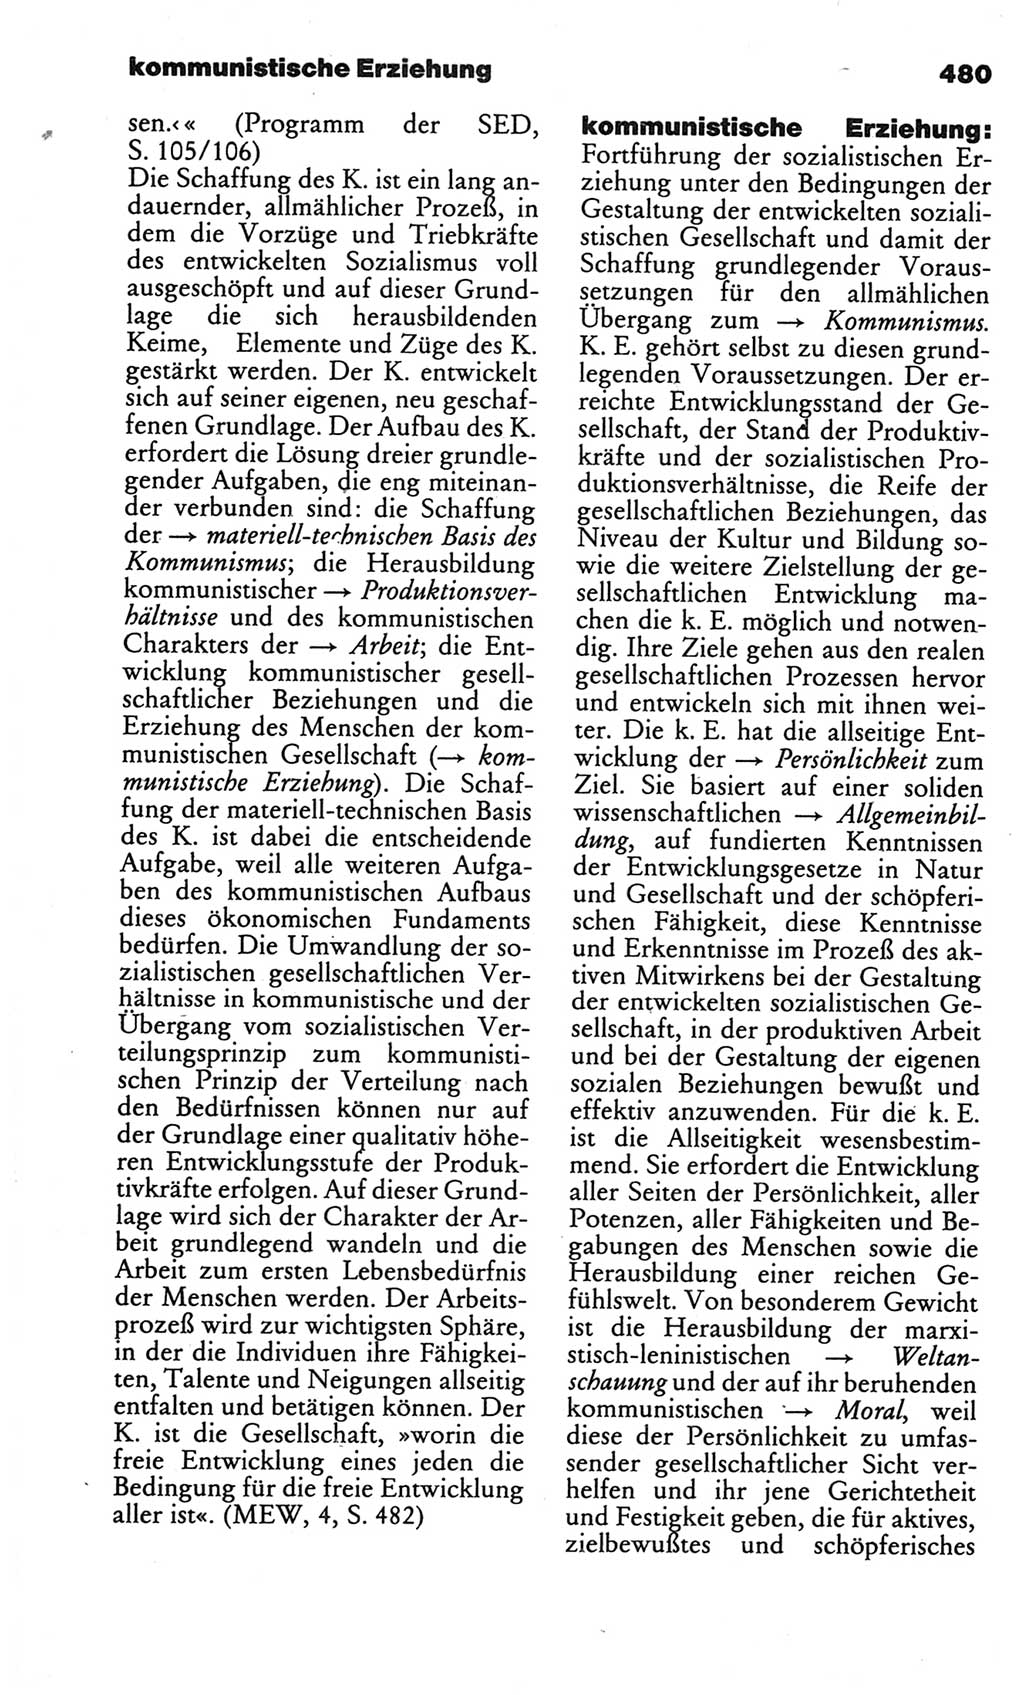 Kleines politisches Wörterbuch [Deutsche Demokratische Republik (DDR)] 1986, Seite 480 (Kl. pol. Wb. DDR 1986, S. 480)